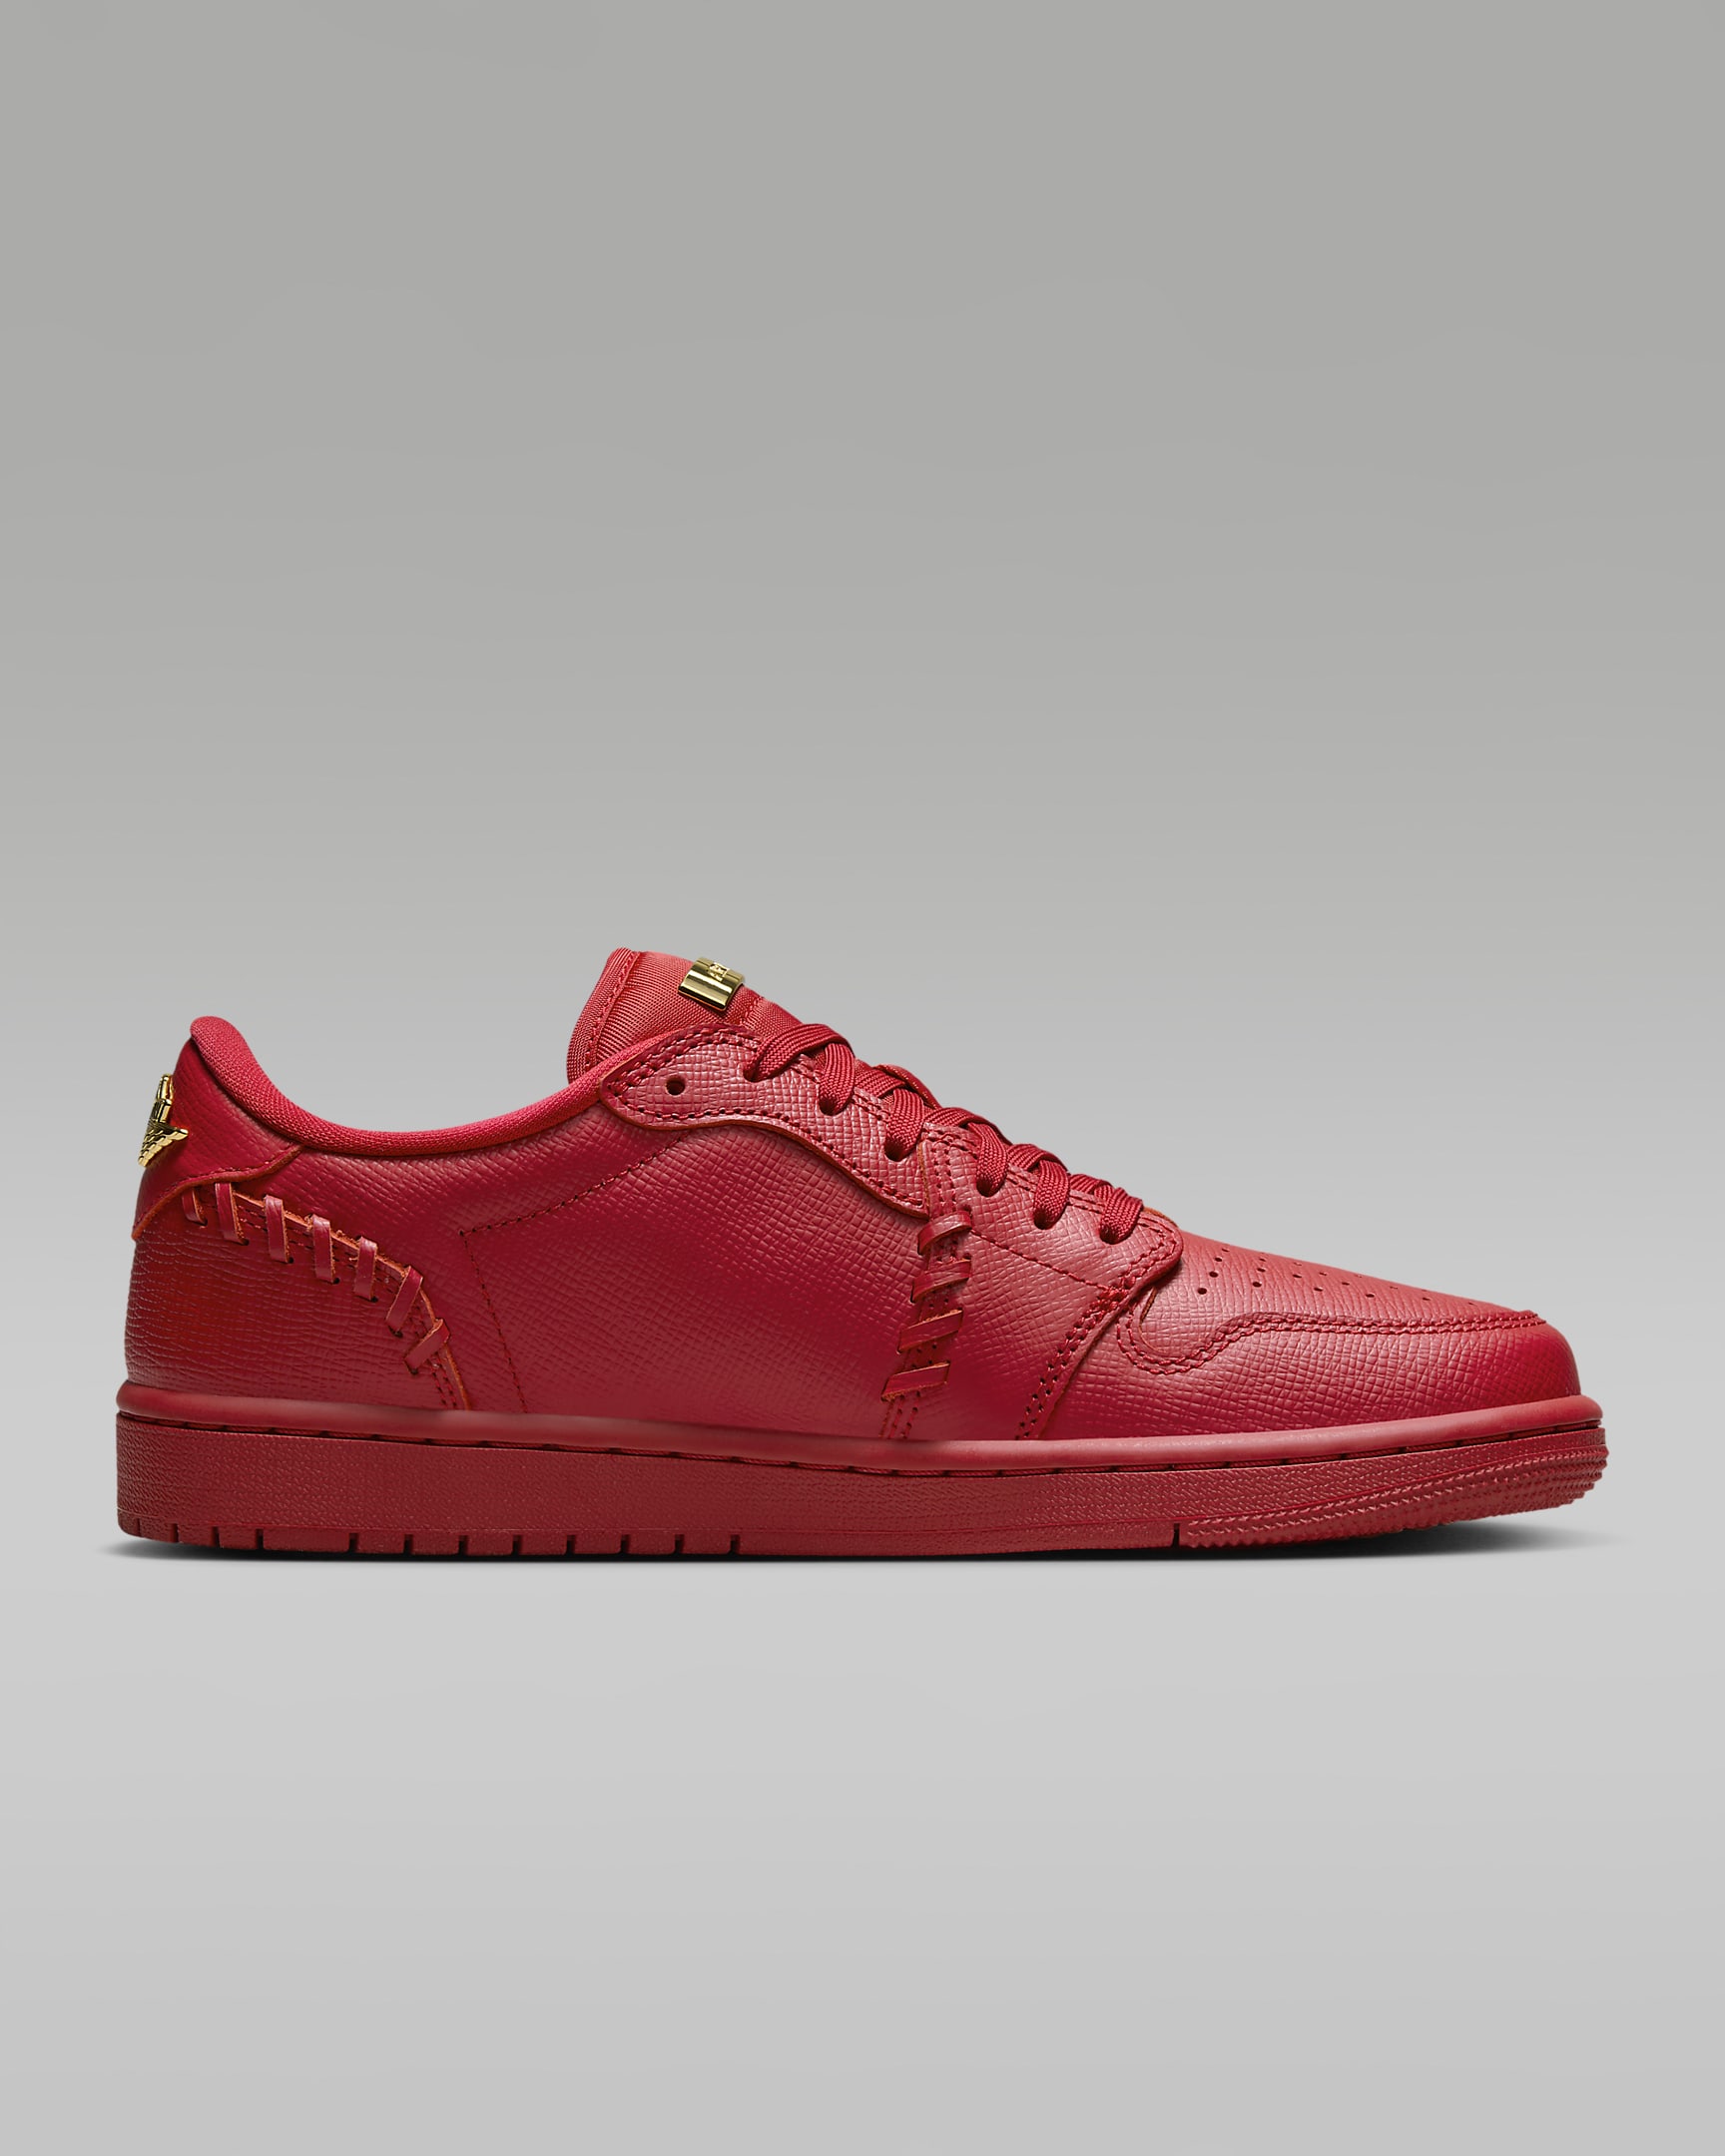 Air Jordan 1 Low Method of Make Women's Shoes - Gym Red/Metallic Gold